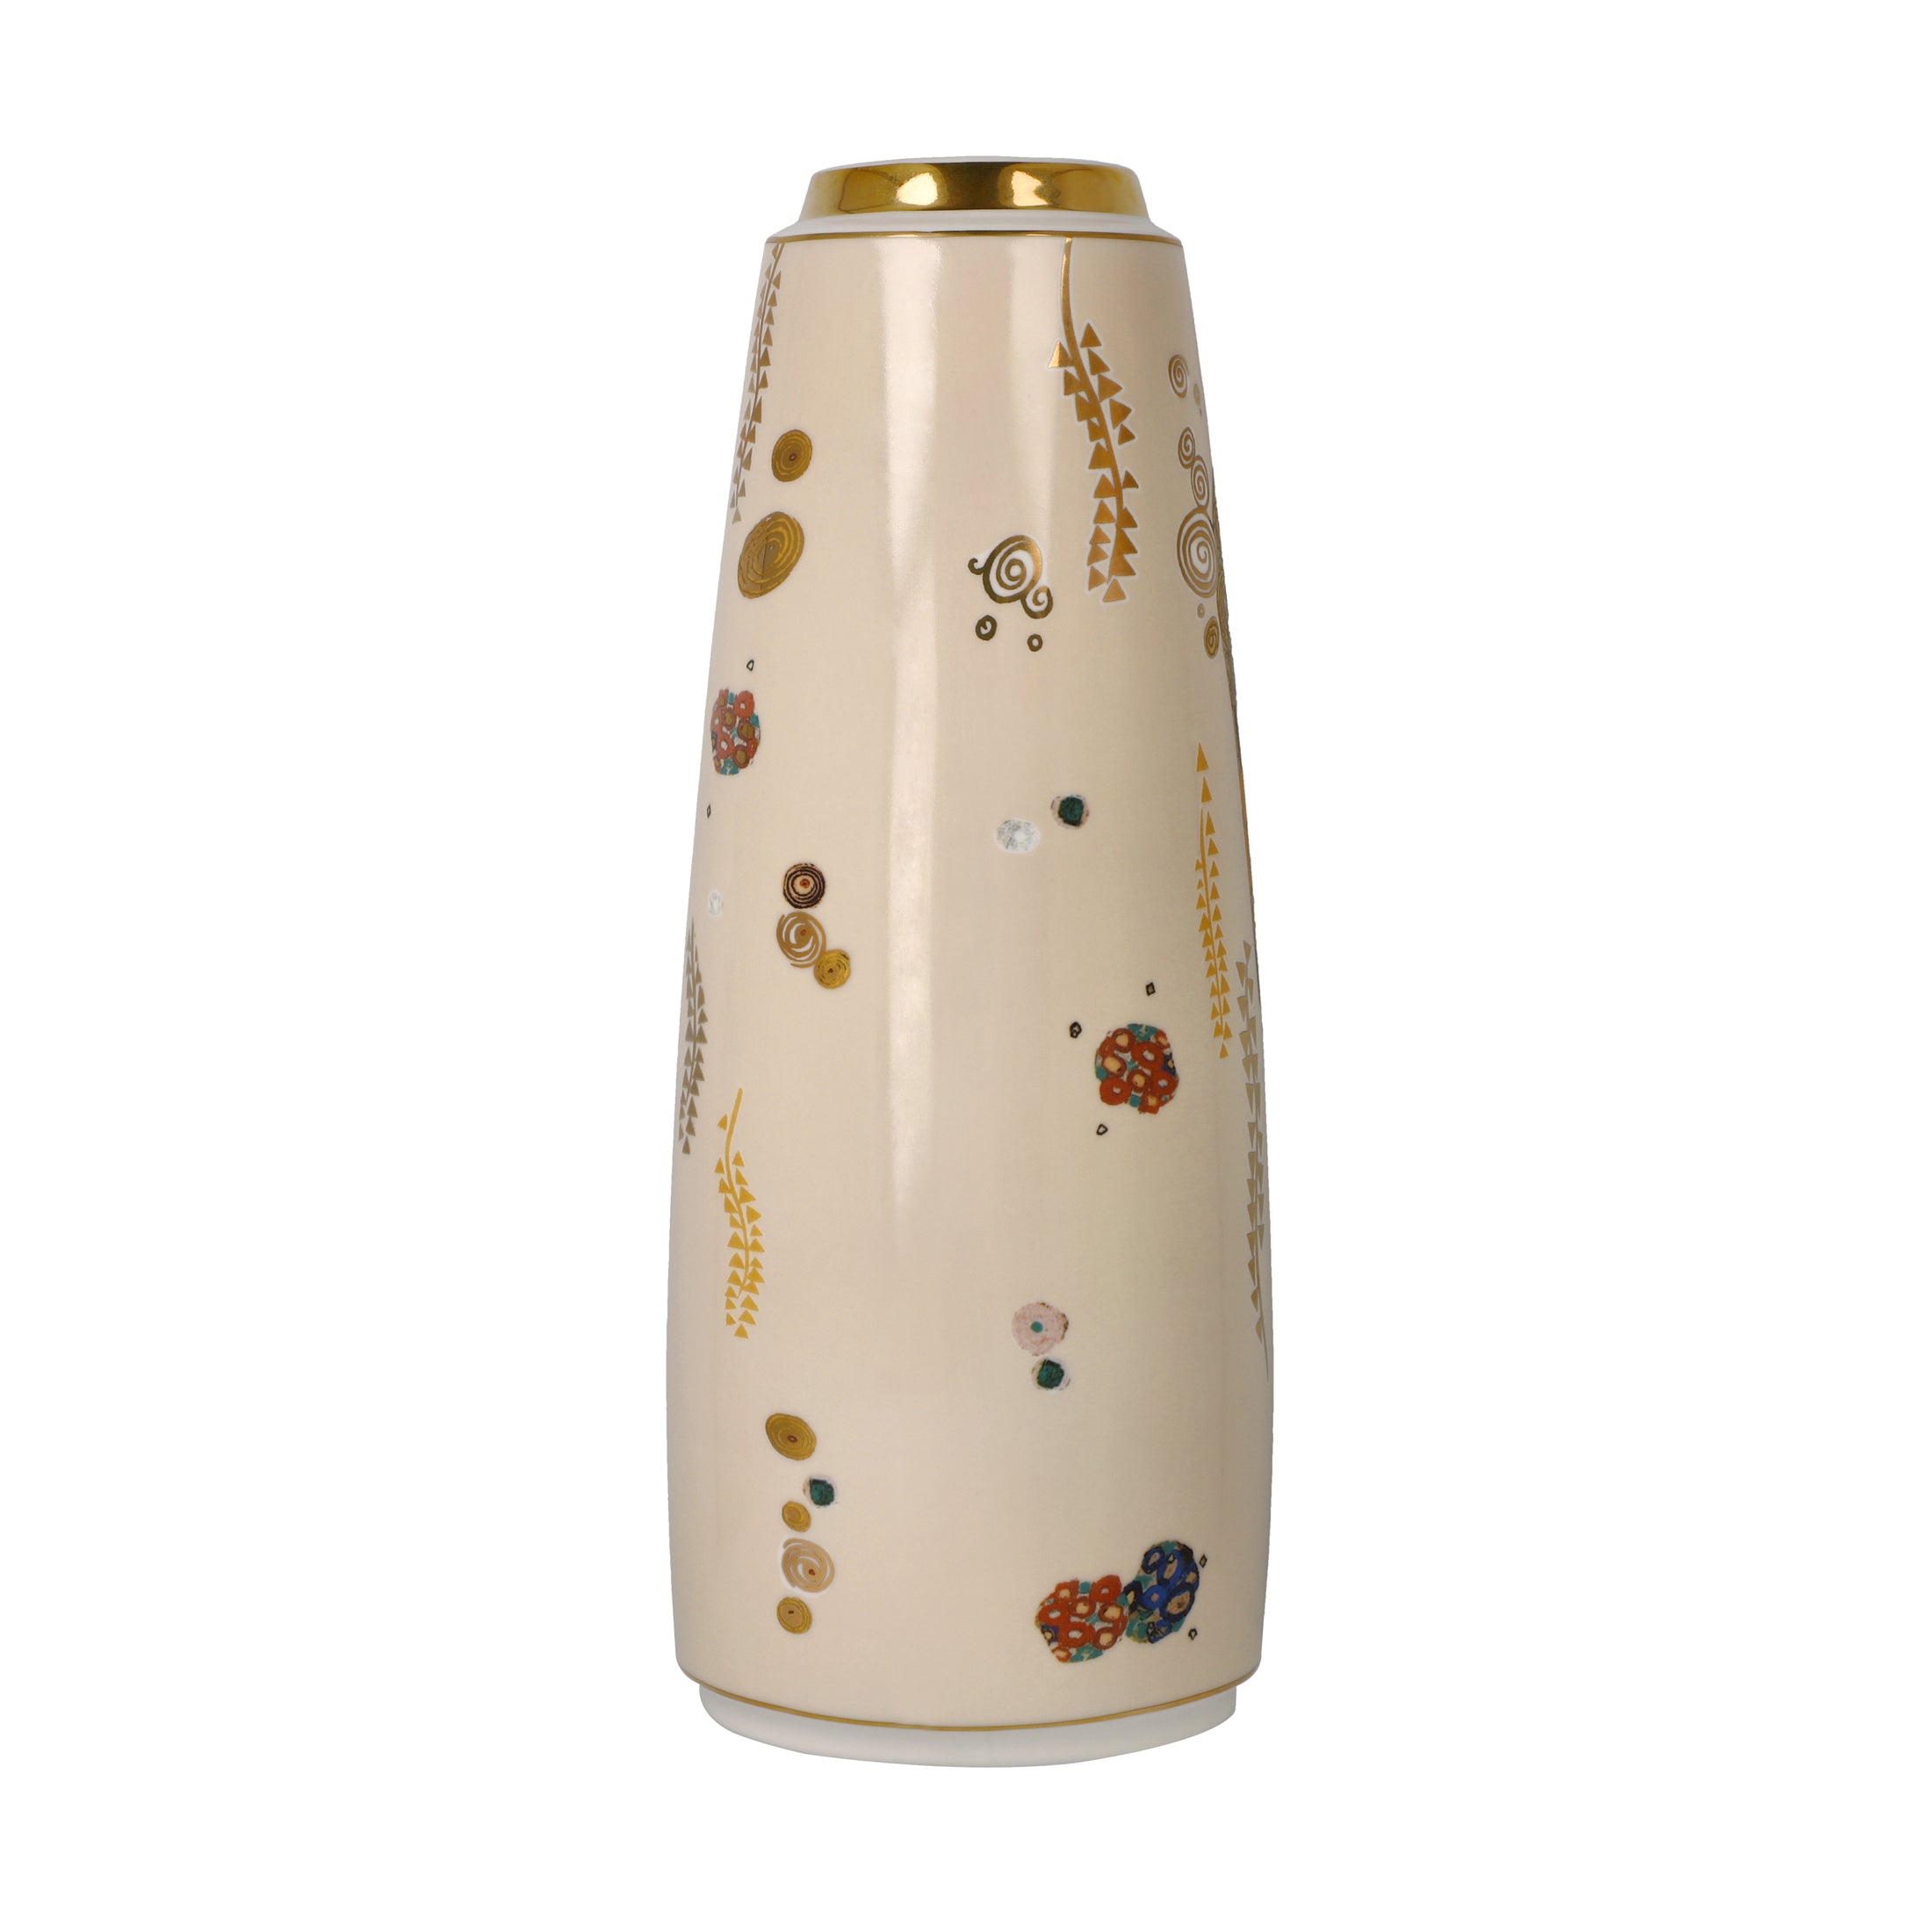 Goebel Artis Orbis Porzellan Vase 26,5cm "Der Kuss" von Gustav Klimt